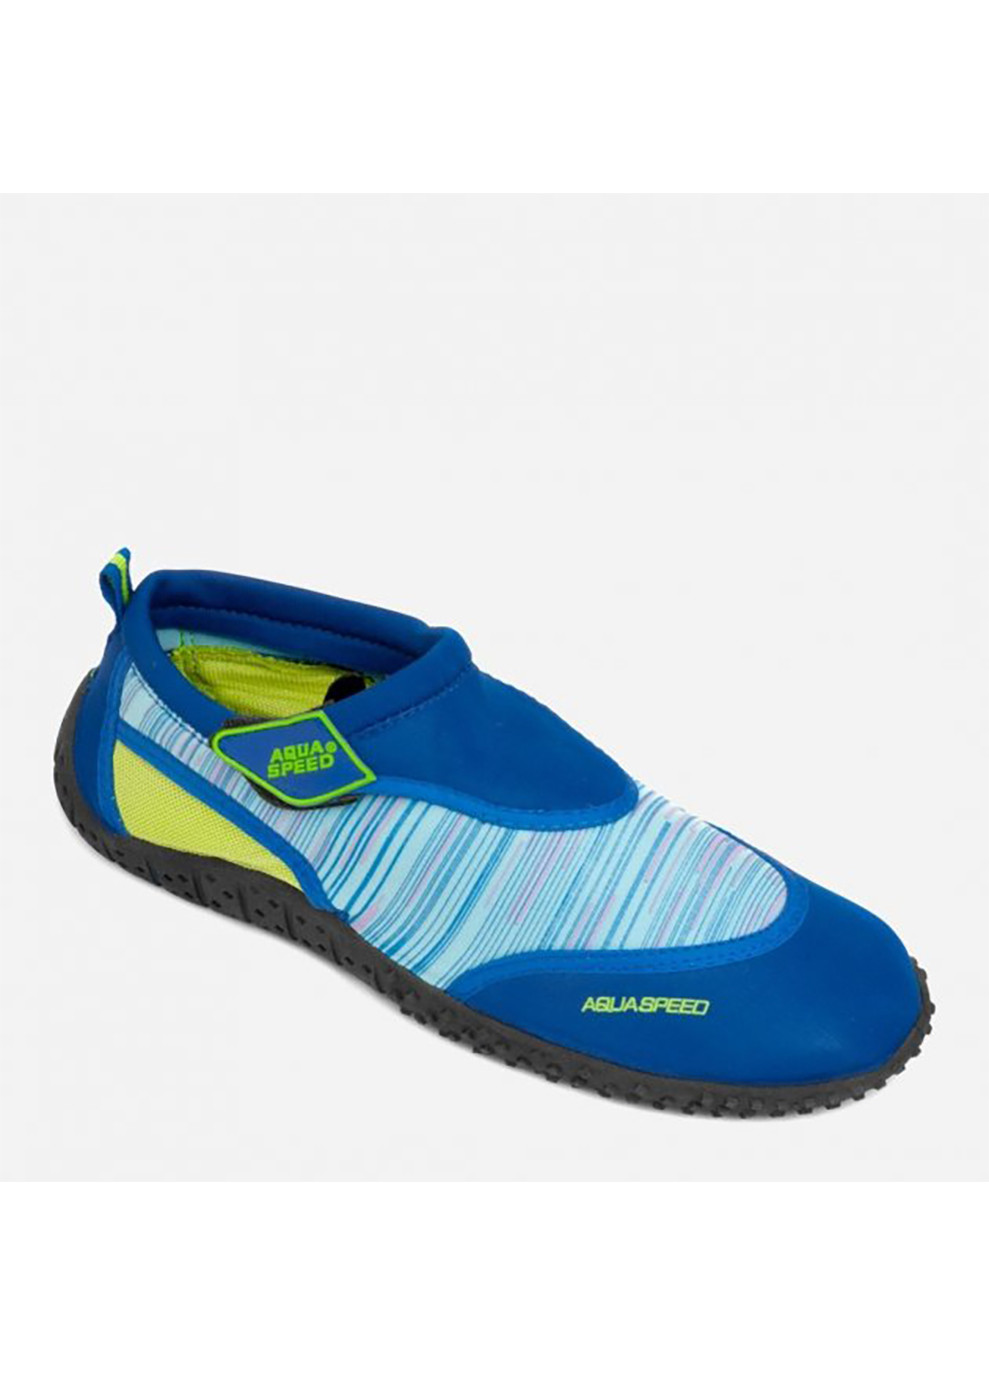 Синие аквашузы aqua shoe model 2c 6584 синий, голубой, жёлтый Aqua Speed